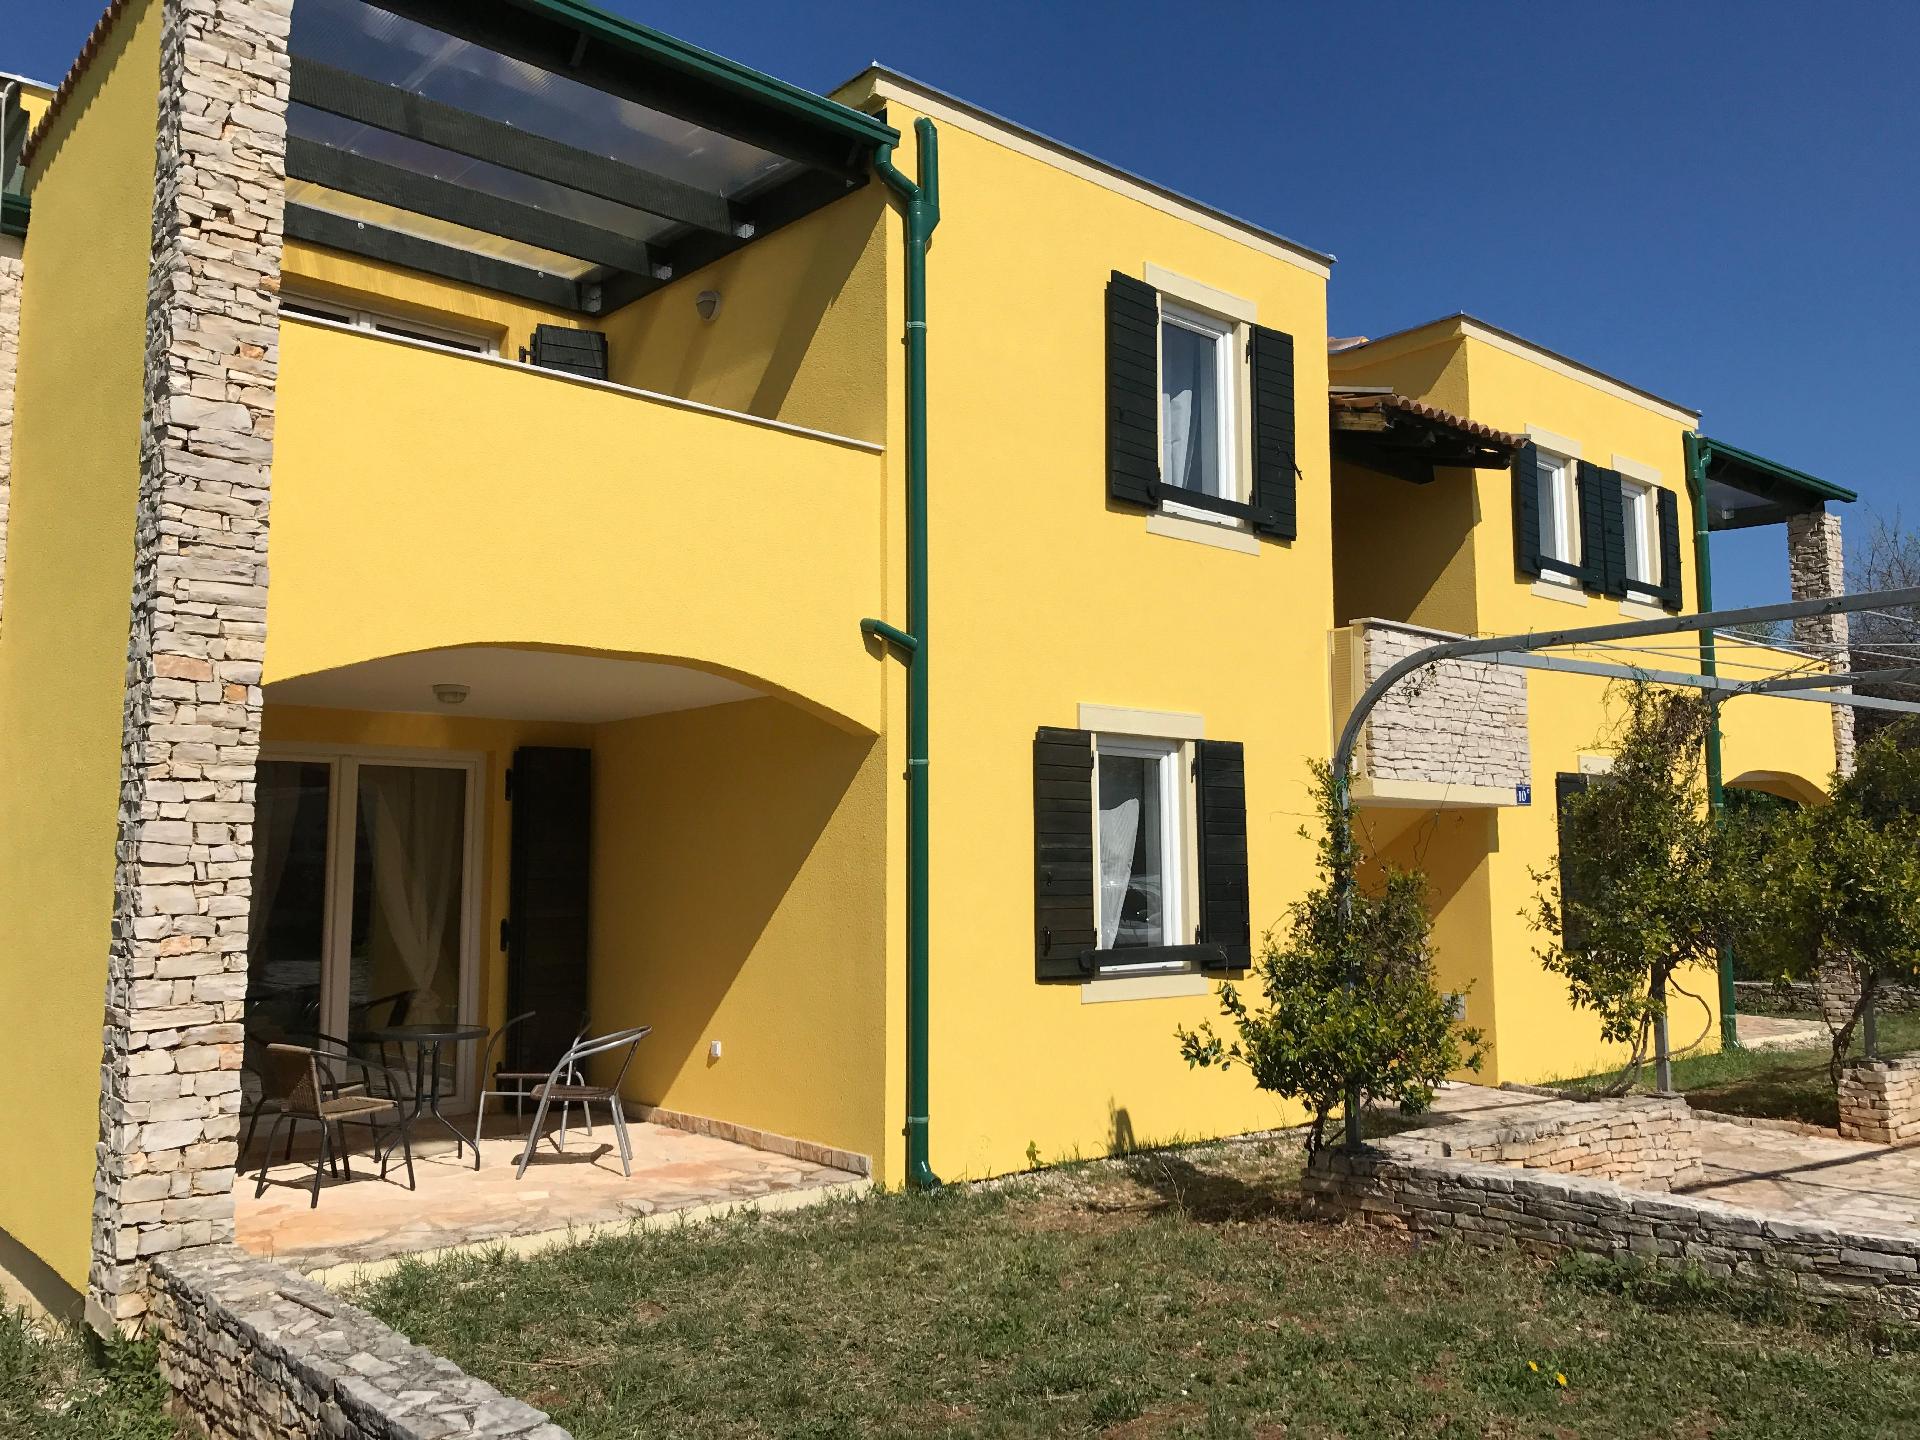 Ferienwohnung für 4 Personen ca. 48 m² i Ferienhaus in Kroatien